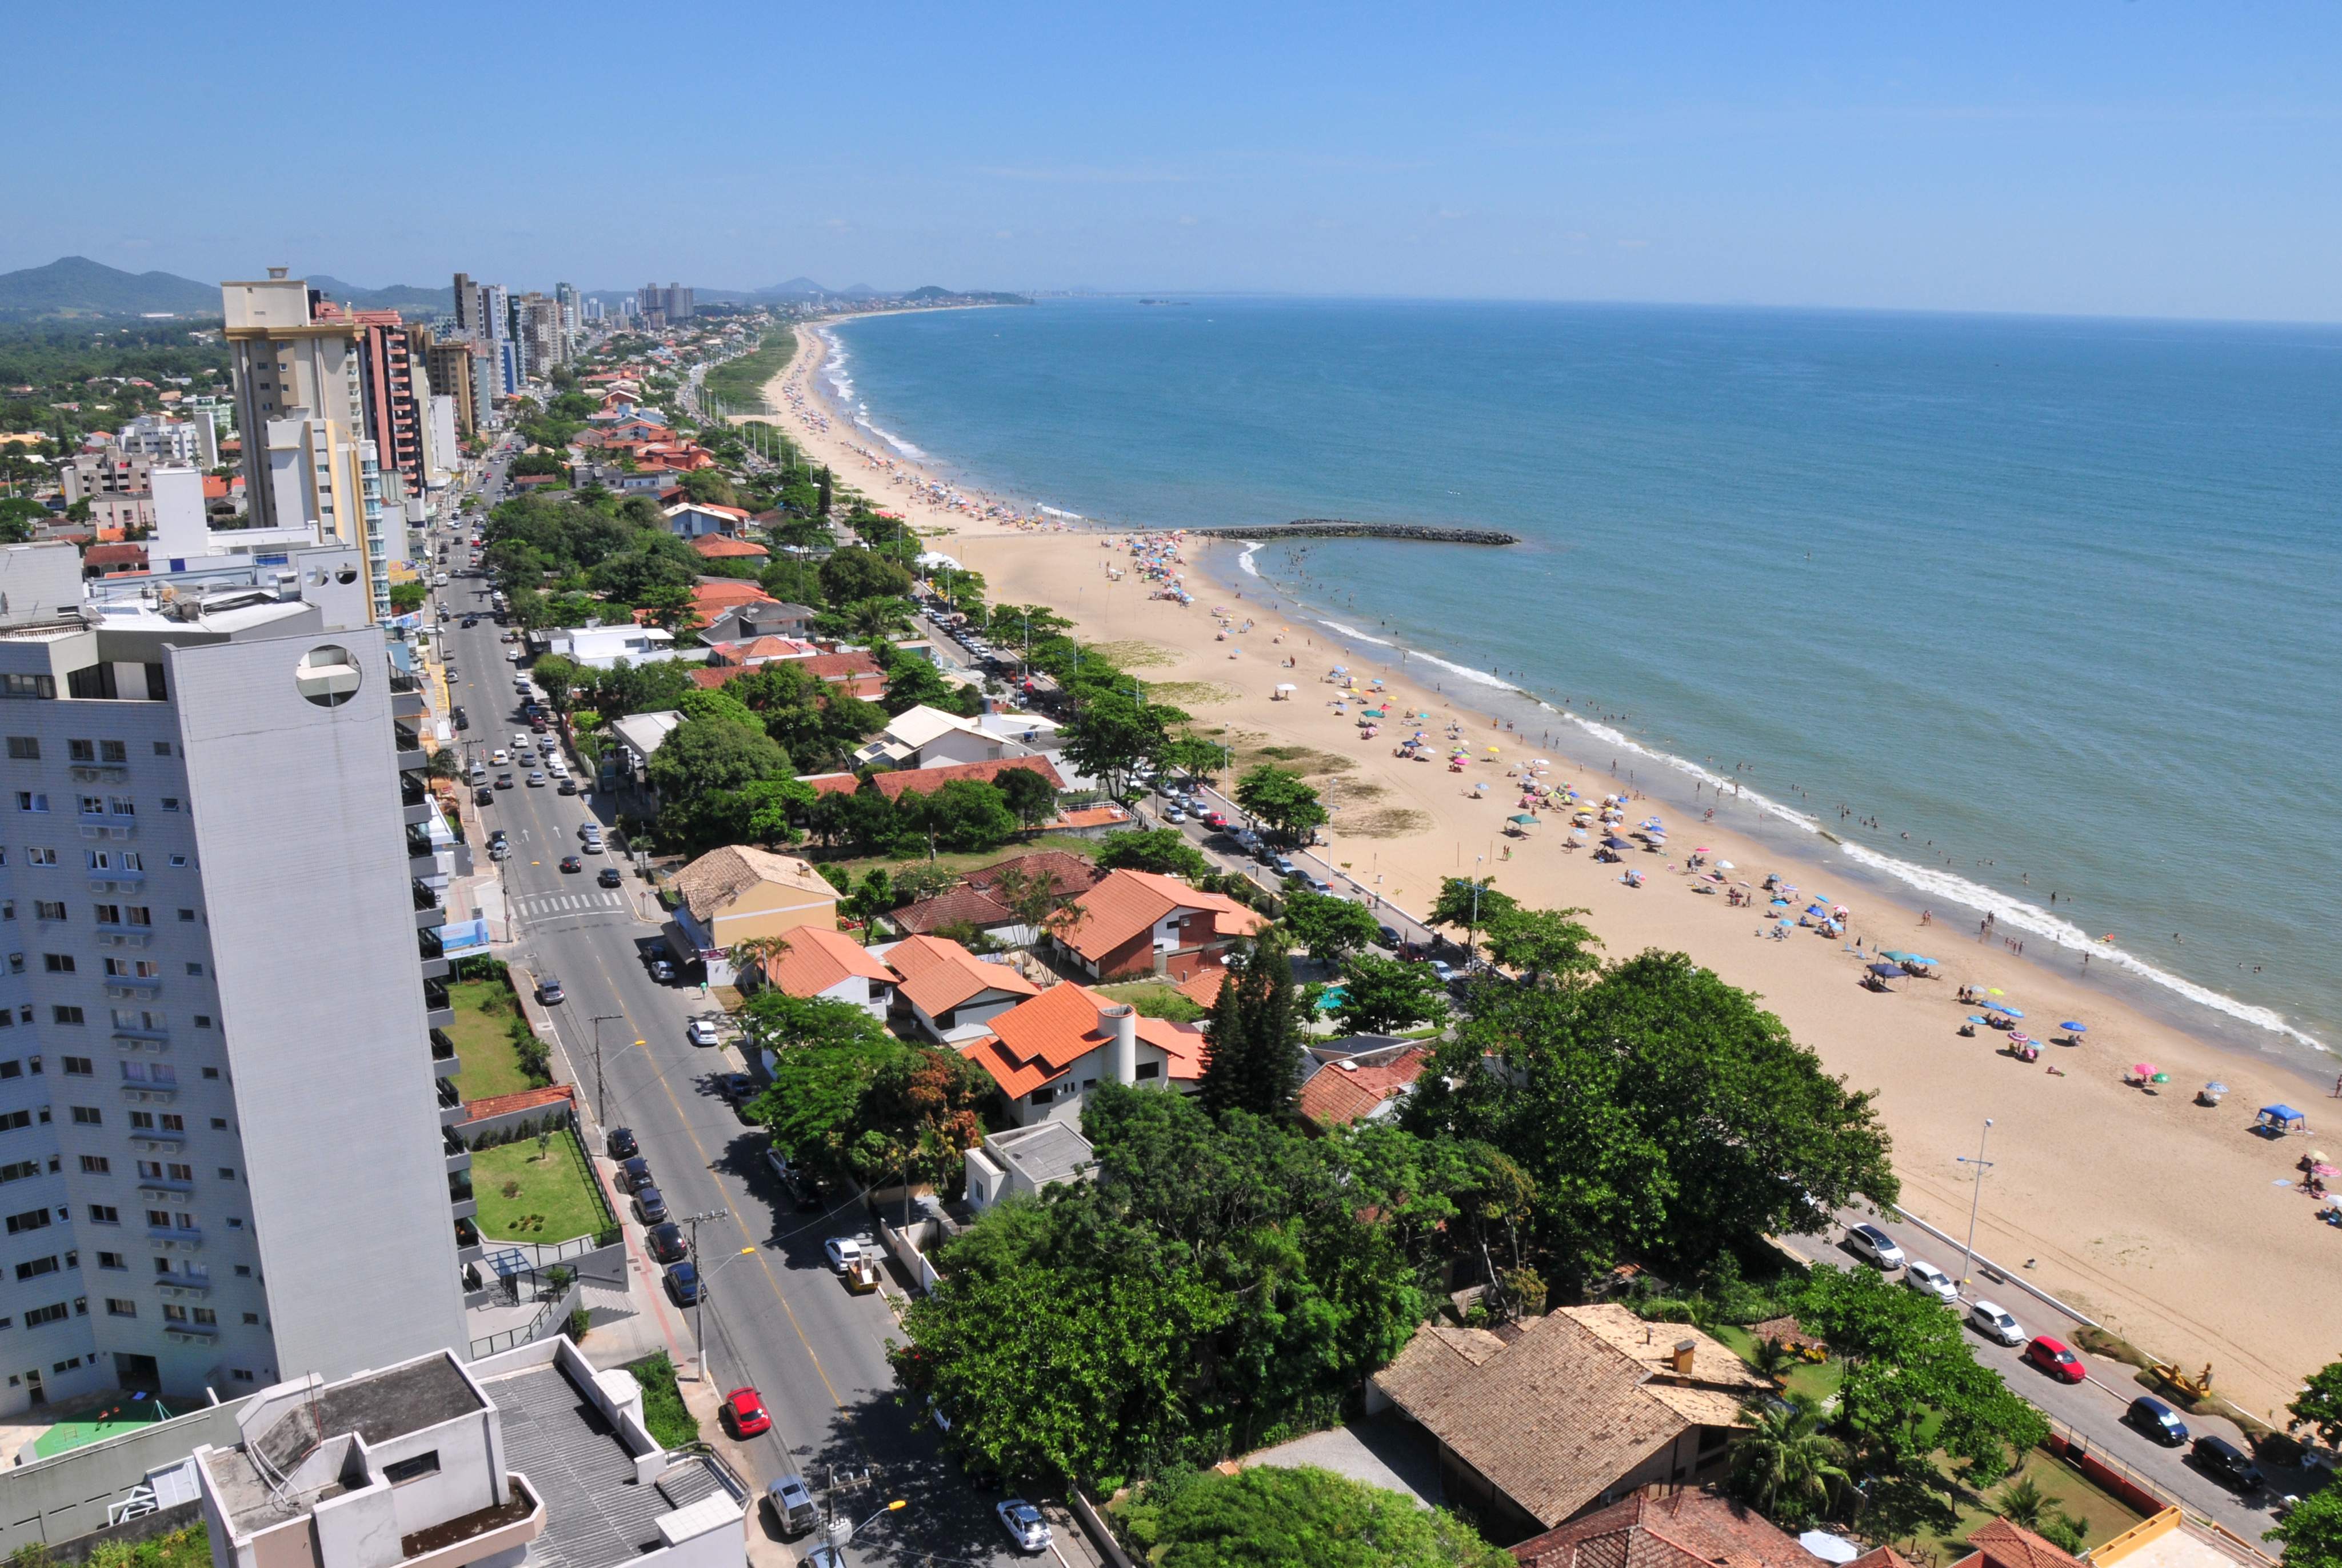 Resultado da pesquisa de fluxo turístico é divulgado em Balneário Piçarras